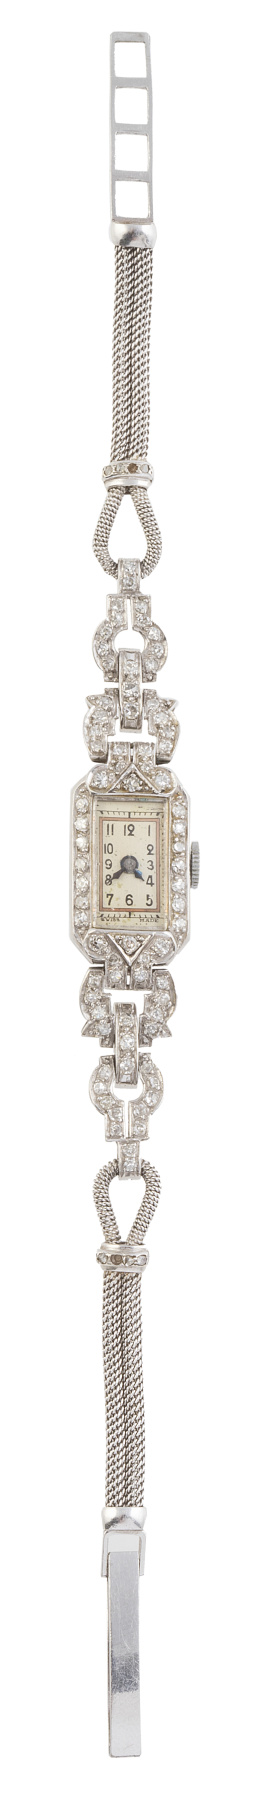 118.  Reloj de pulsera para señora Art-Decó de platino y  brillantes con pulsera de cordoncillo 